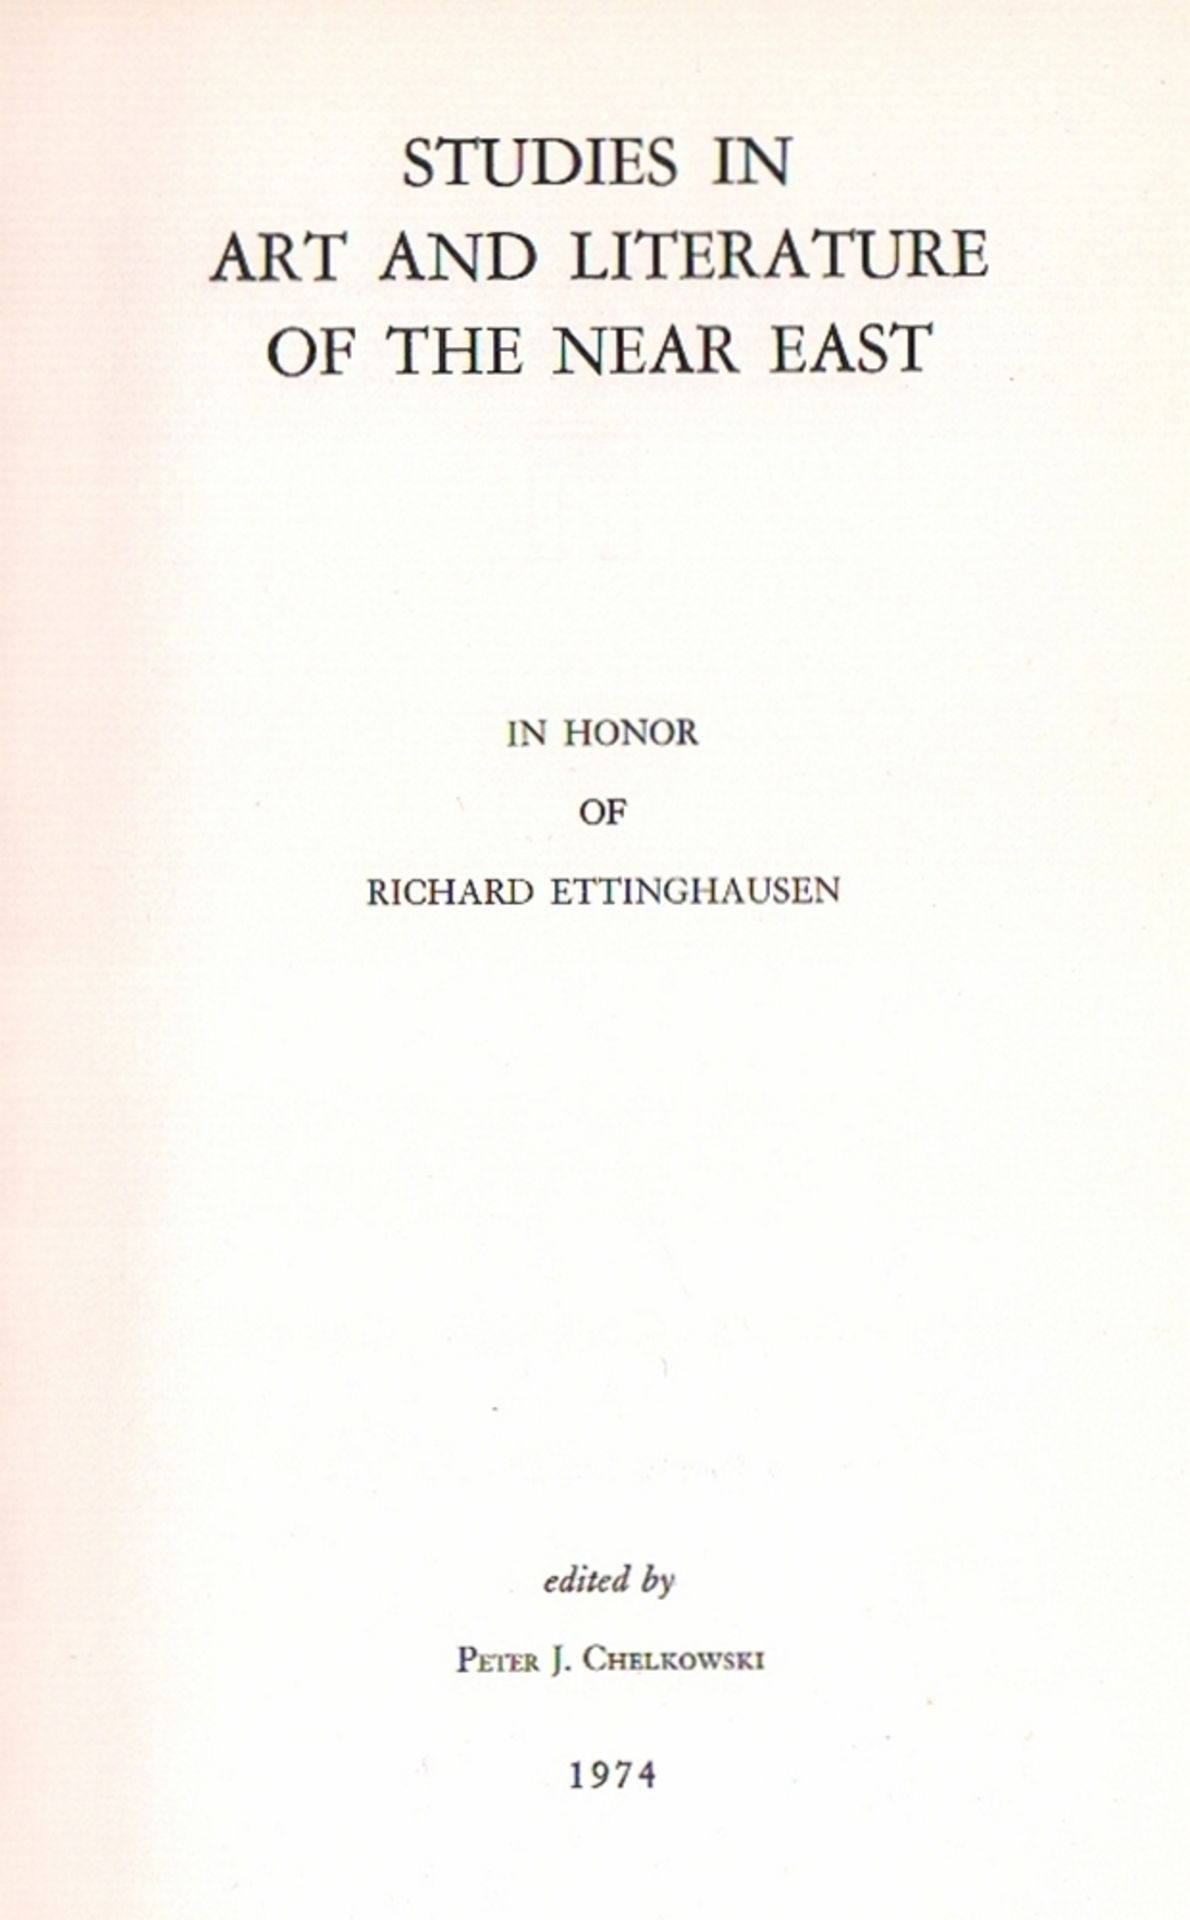 Islamistik. Ettinghausen. Chelkowski, Peter J. (Hrsg). Studies in Art and Literature of the Near